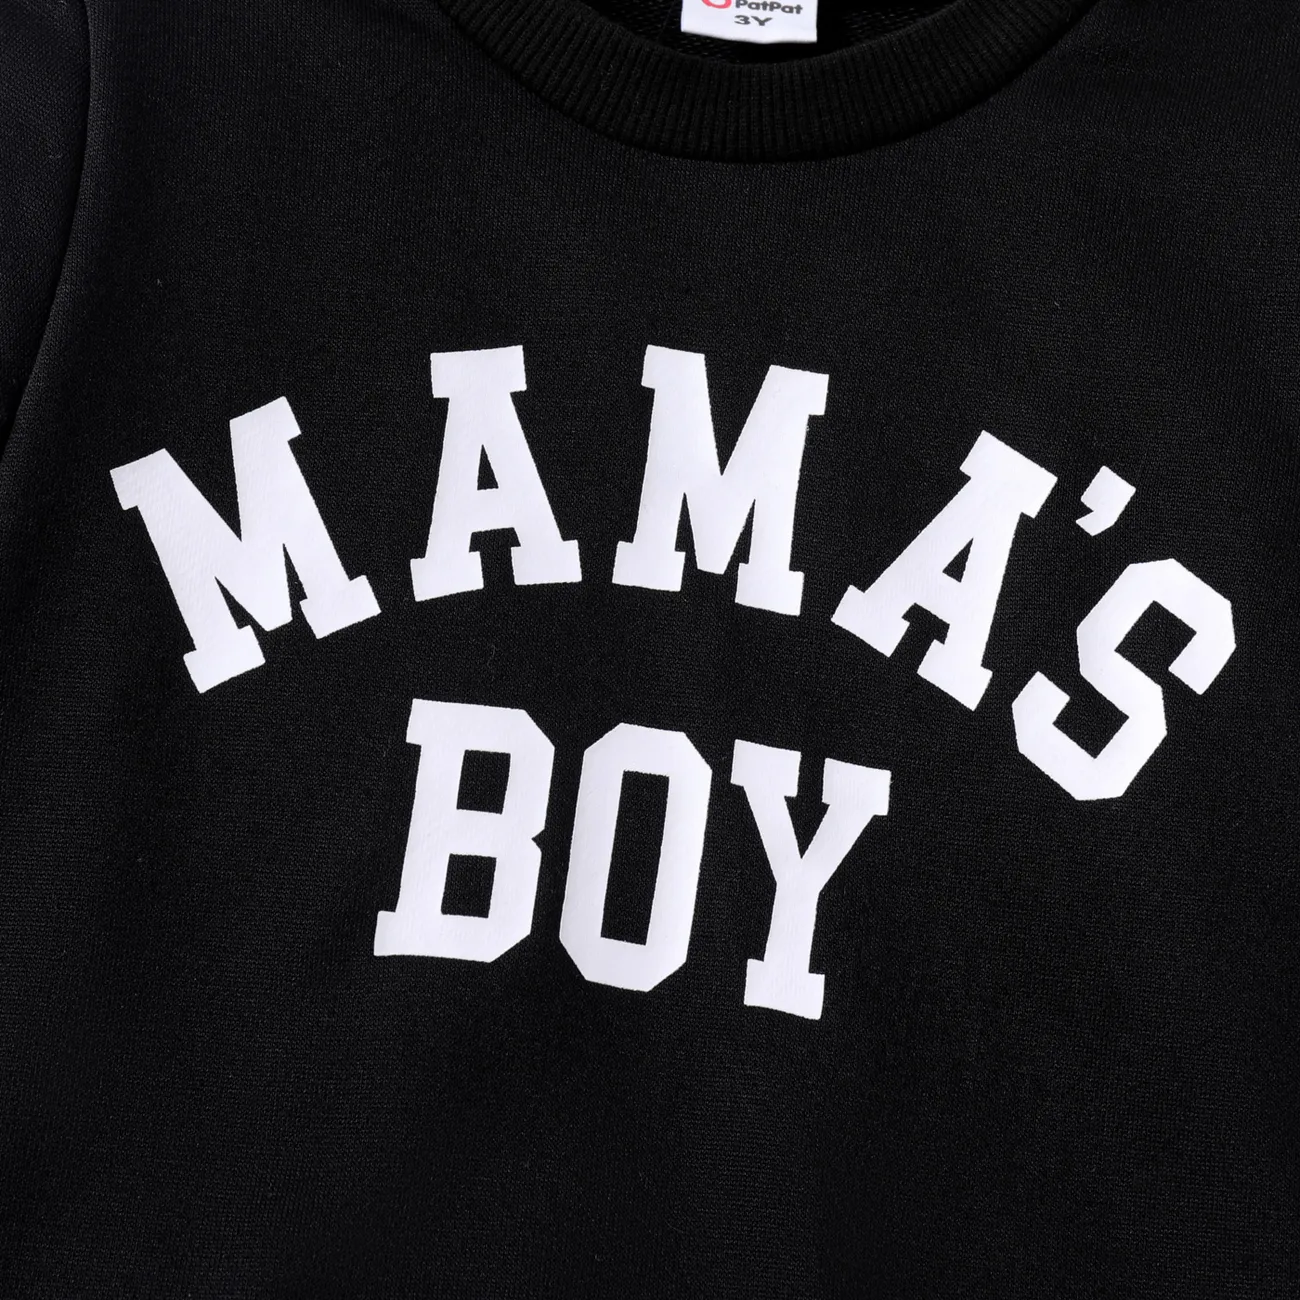 Toddler Girl/Boy Letter Print Pullover Sweatshirt Black big image 1